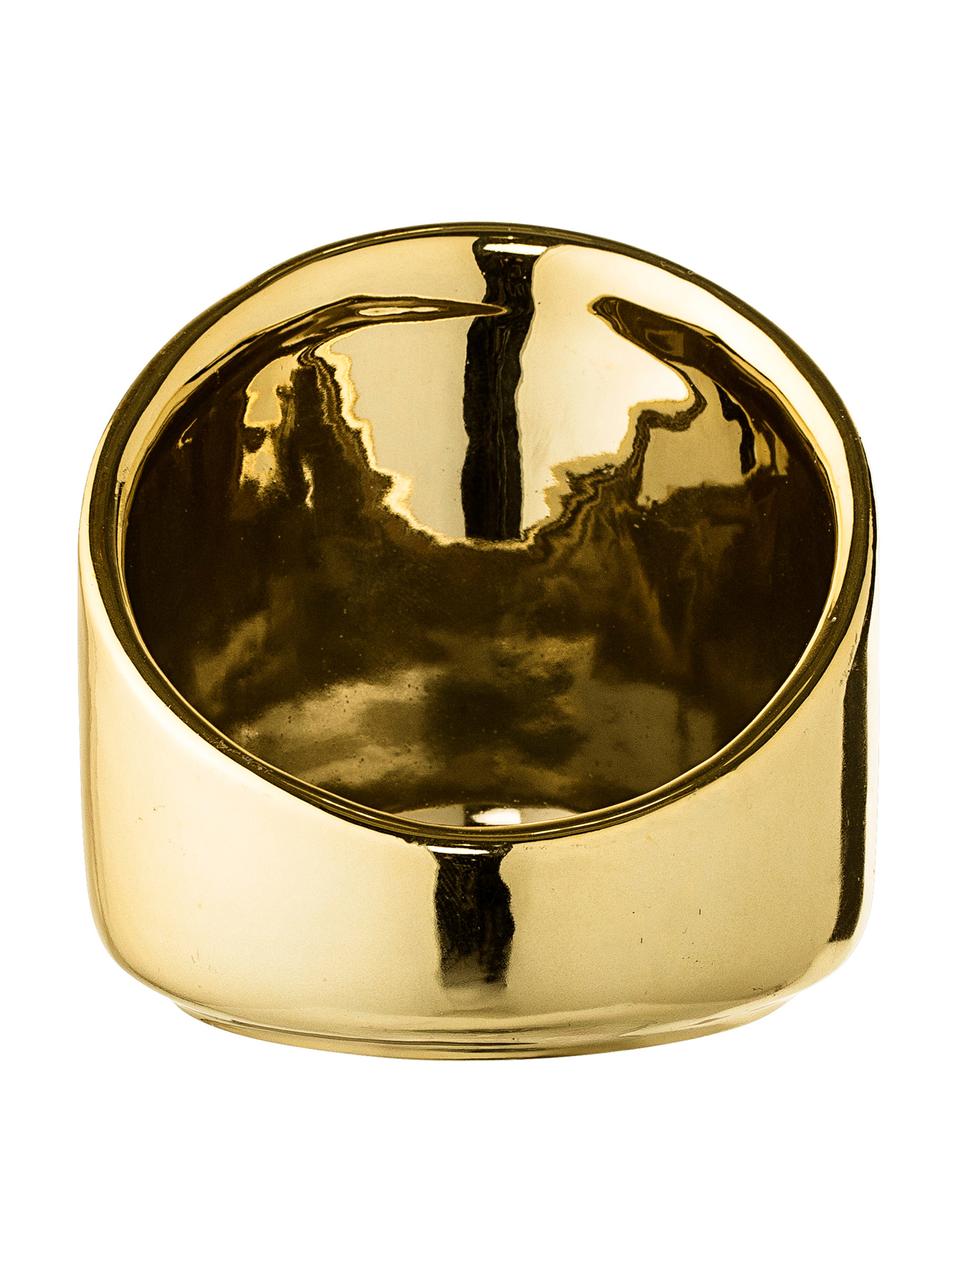 Kleiner Teelichthalter Mara in Gold, Steingut, Goldfarben, Ø 8 x H 8 cm